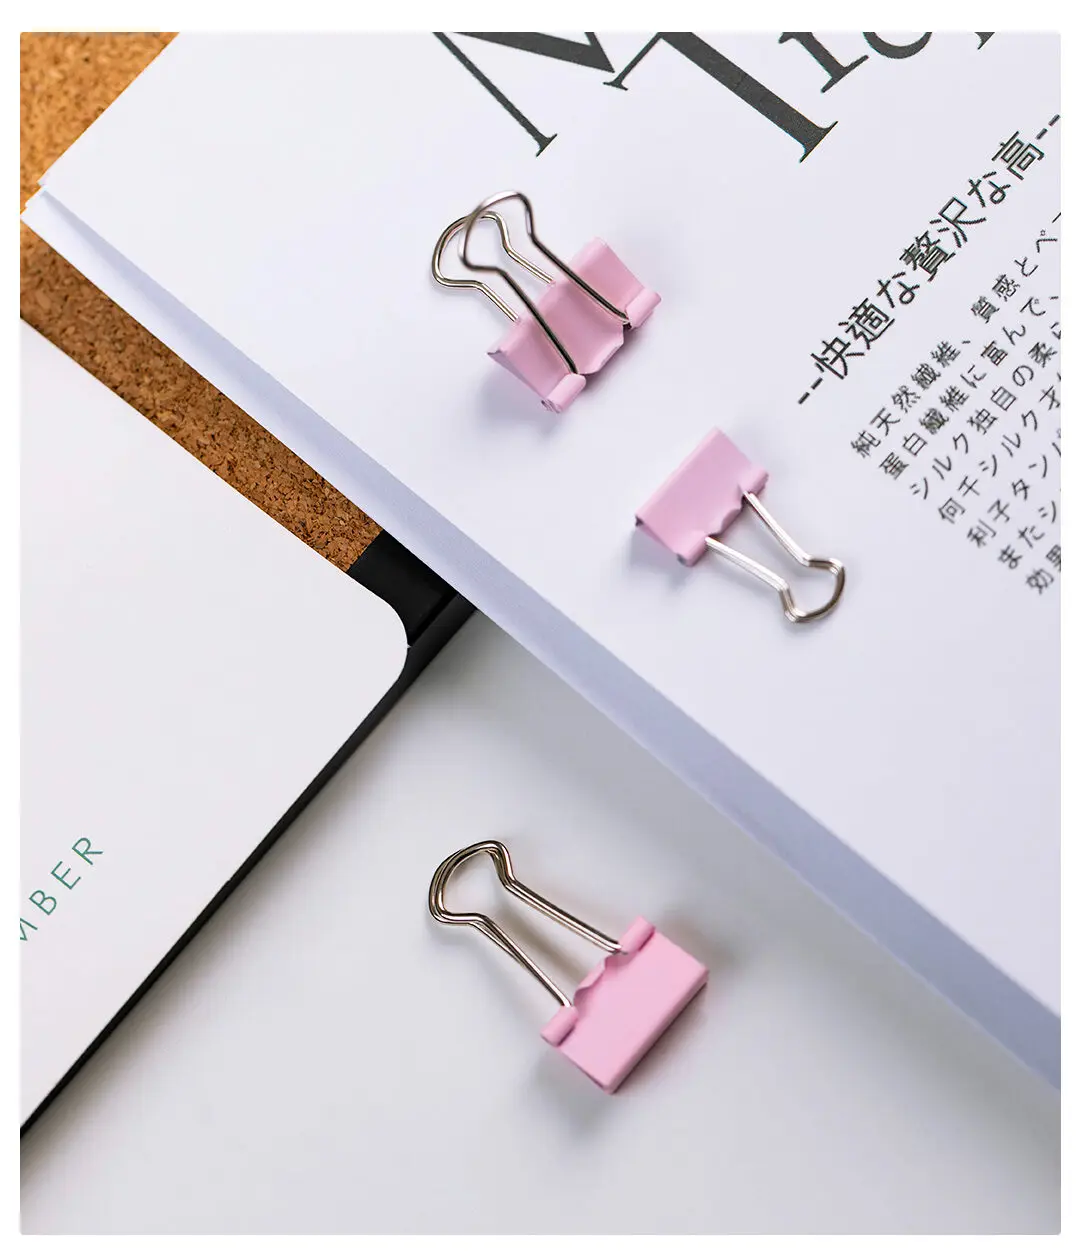 Xiaomi Youpin Pushpins зажим для бумаги папки офисная комбинация трехцветный костюм марганцевая сталь Материал сильная сила зажима